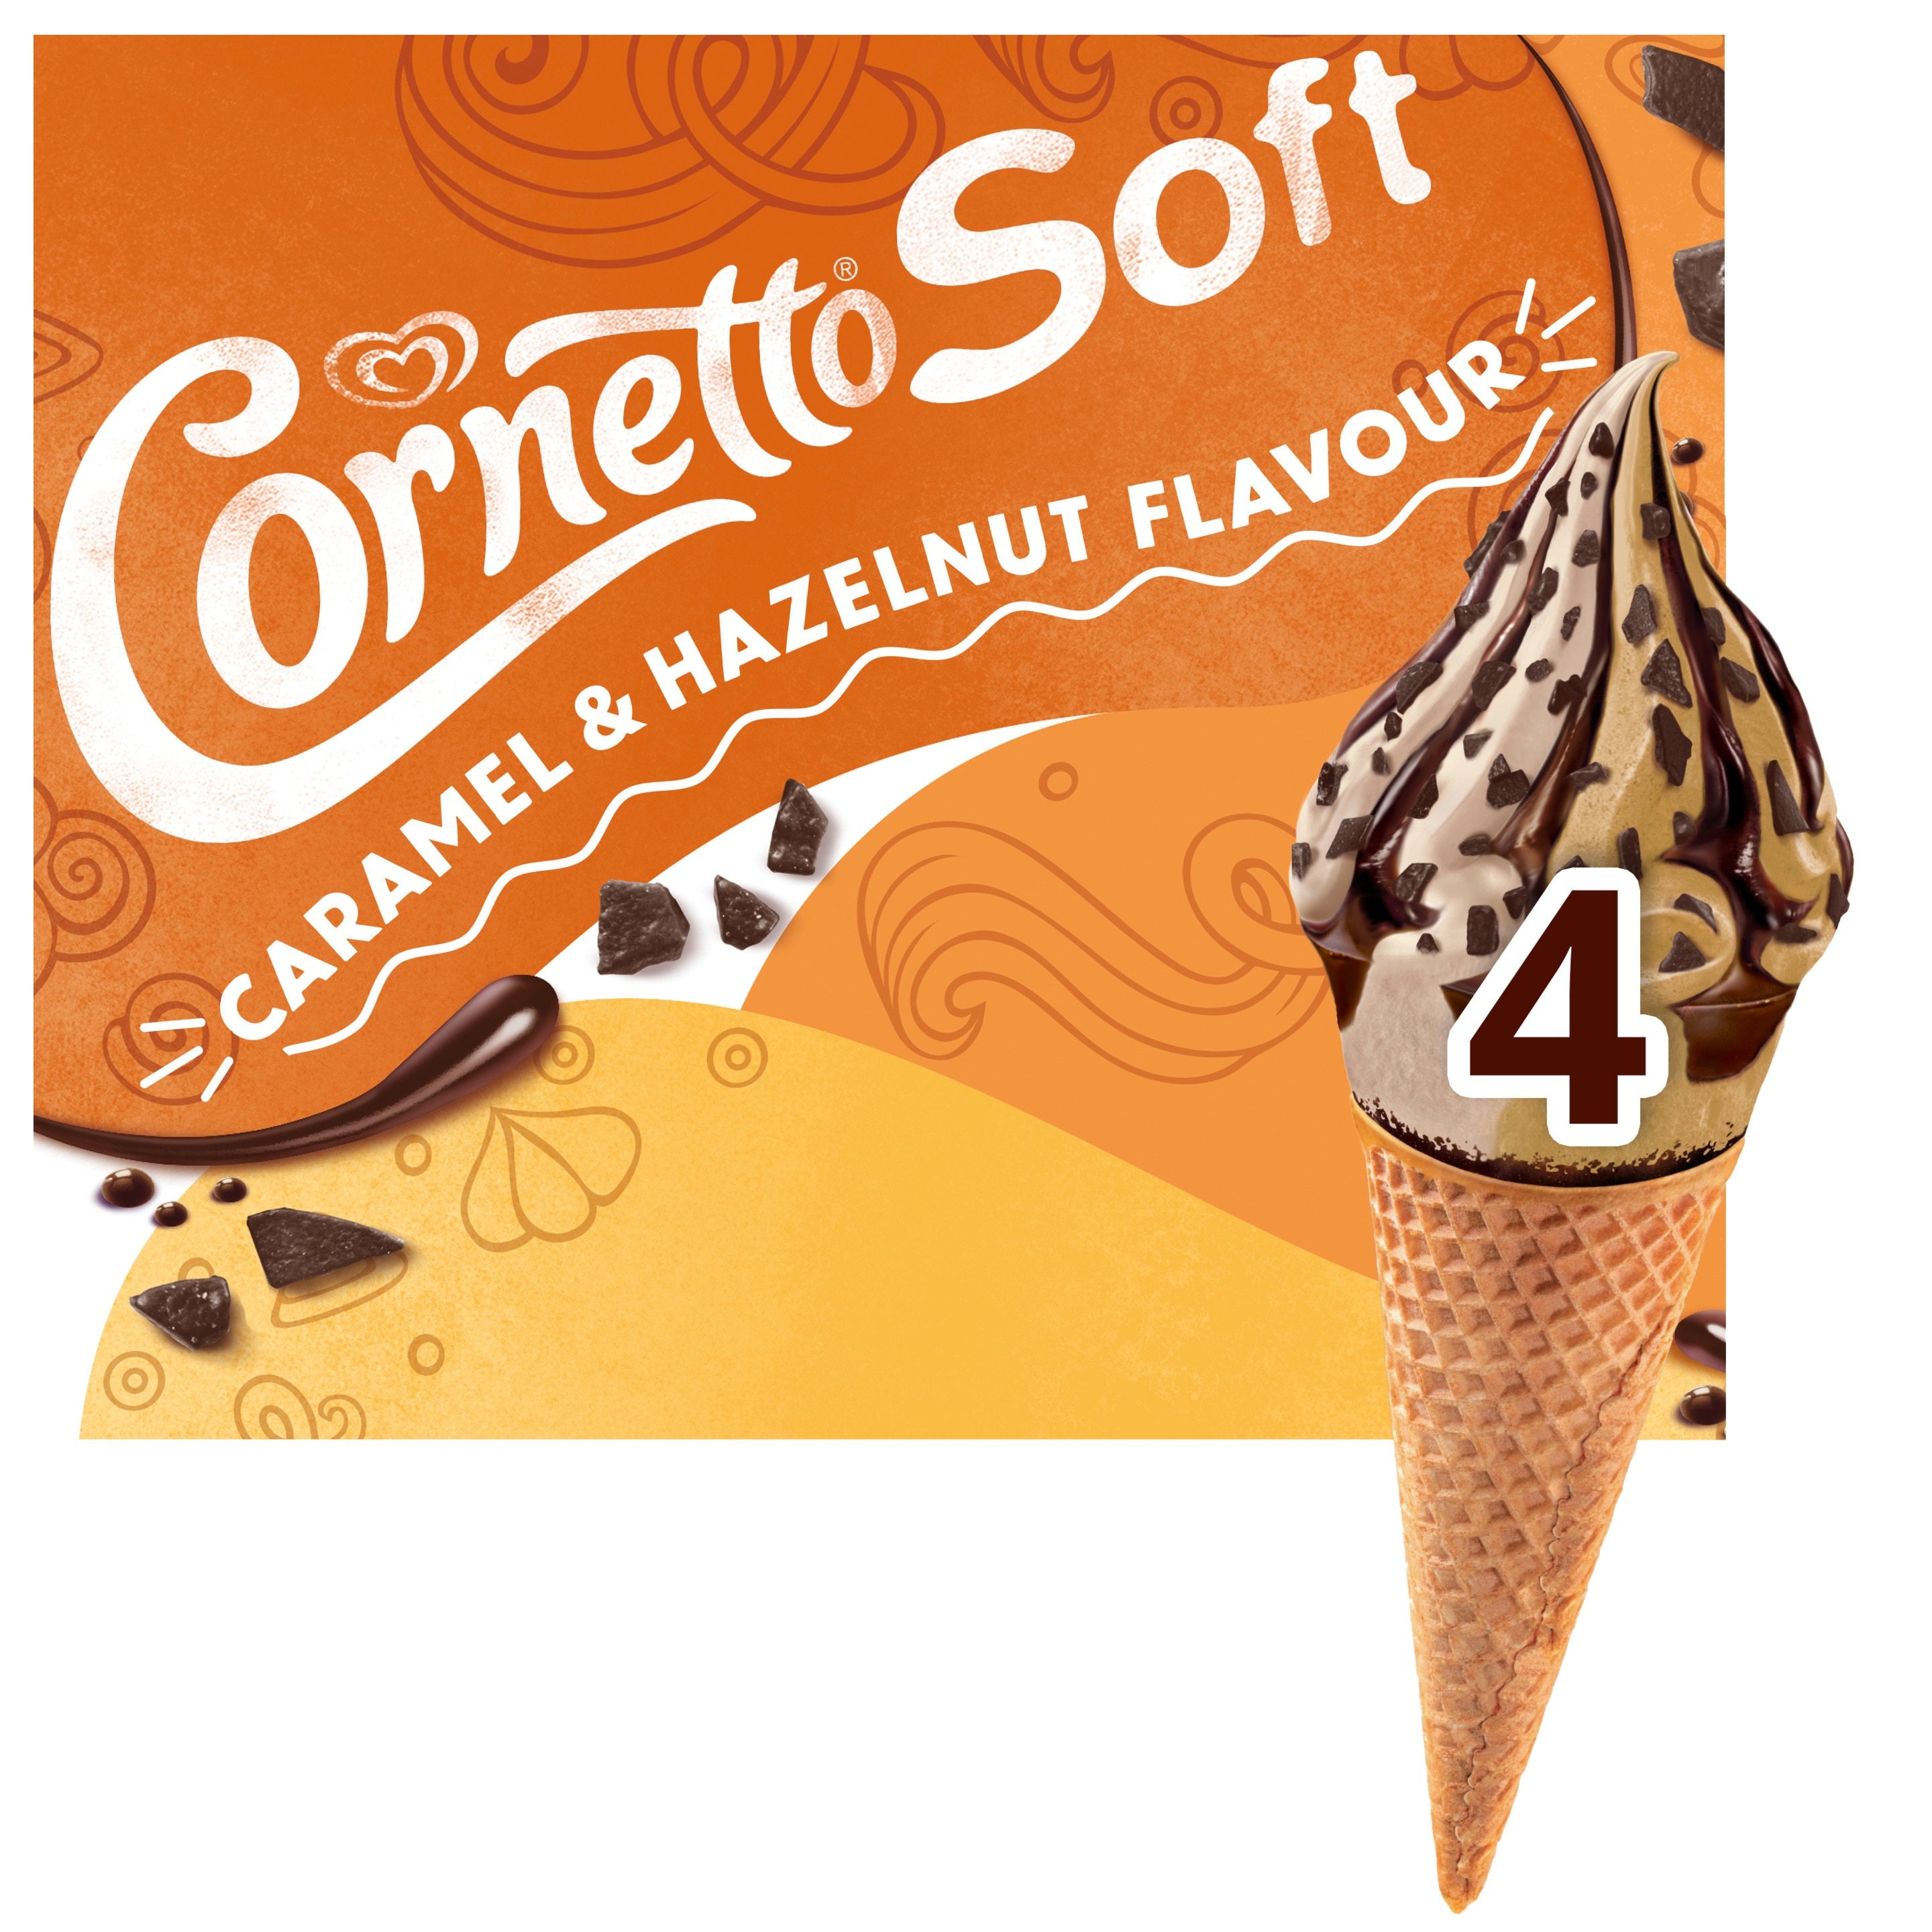 Cornetto Soft Caramel & Hazelnut Flavor 4 x 140 ml - Langnese Deutschland